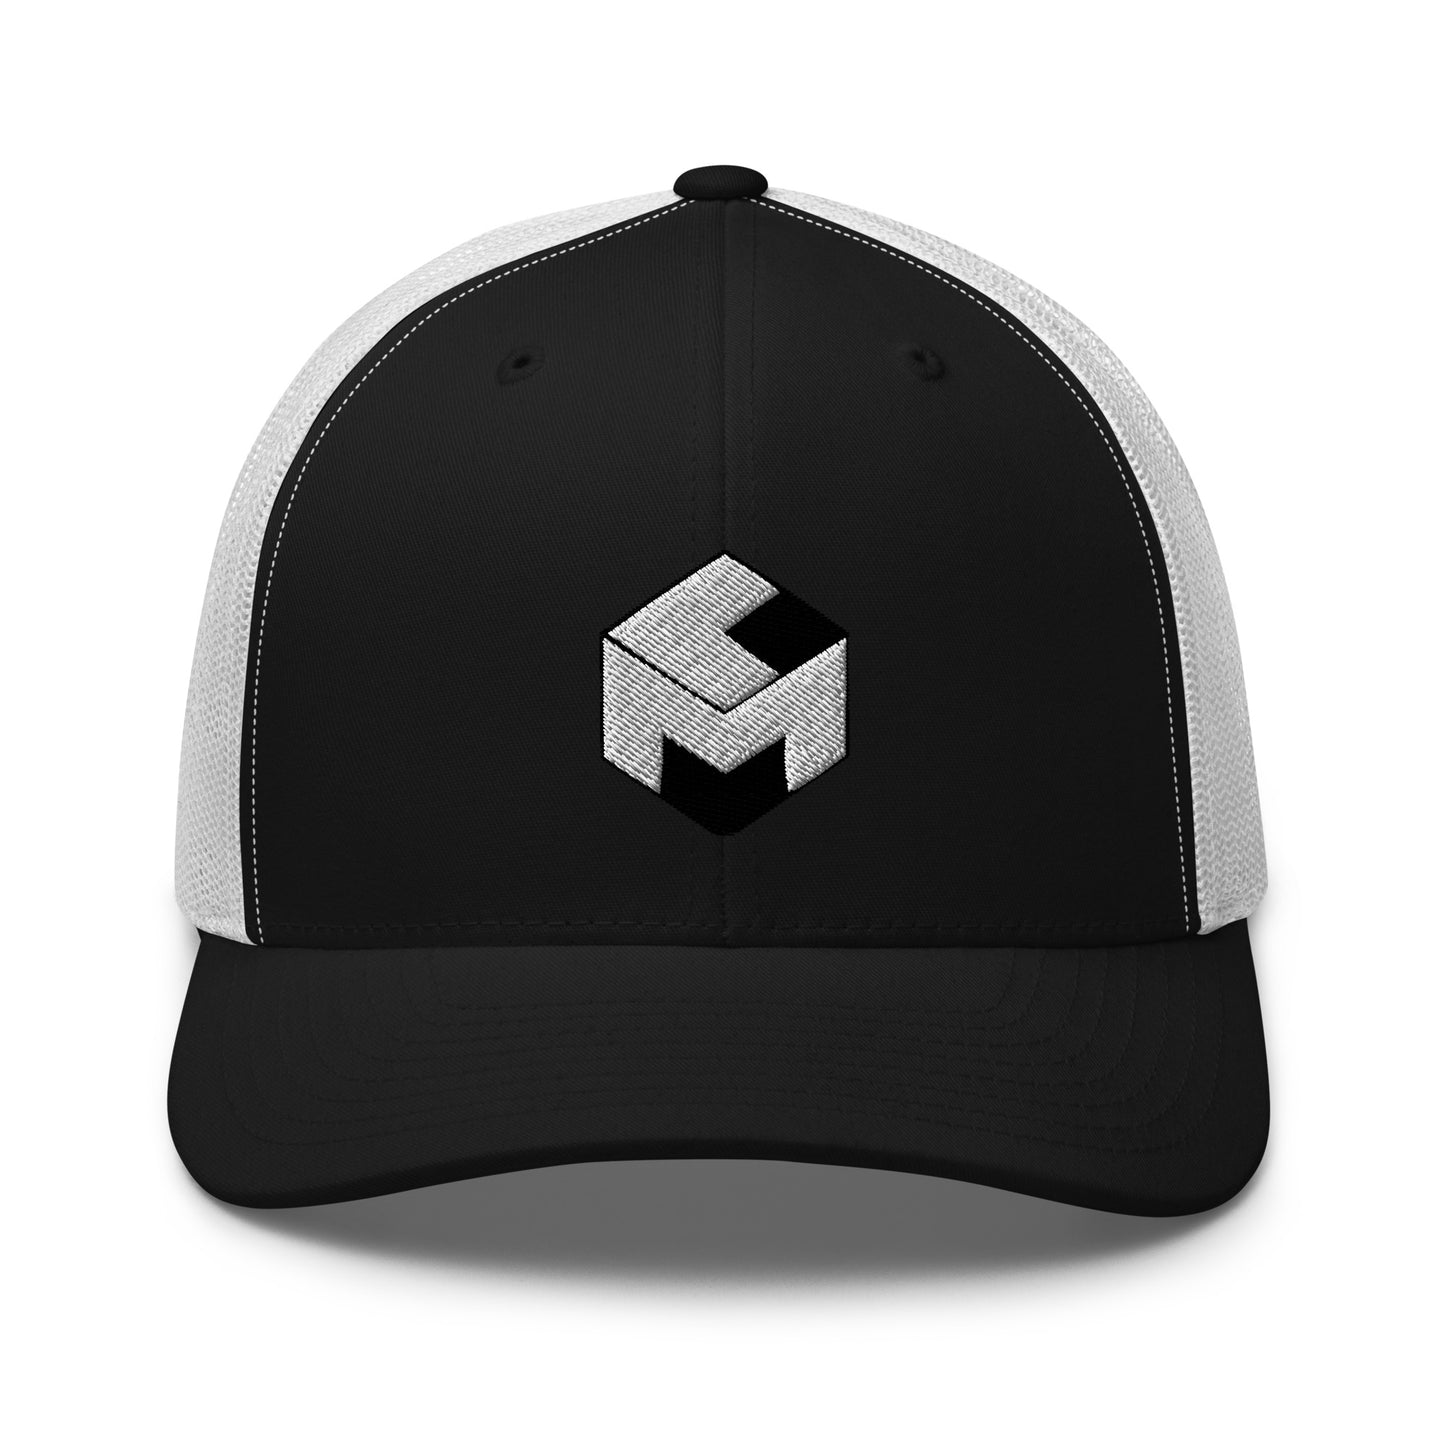 Leveraged Mining Hat